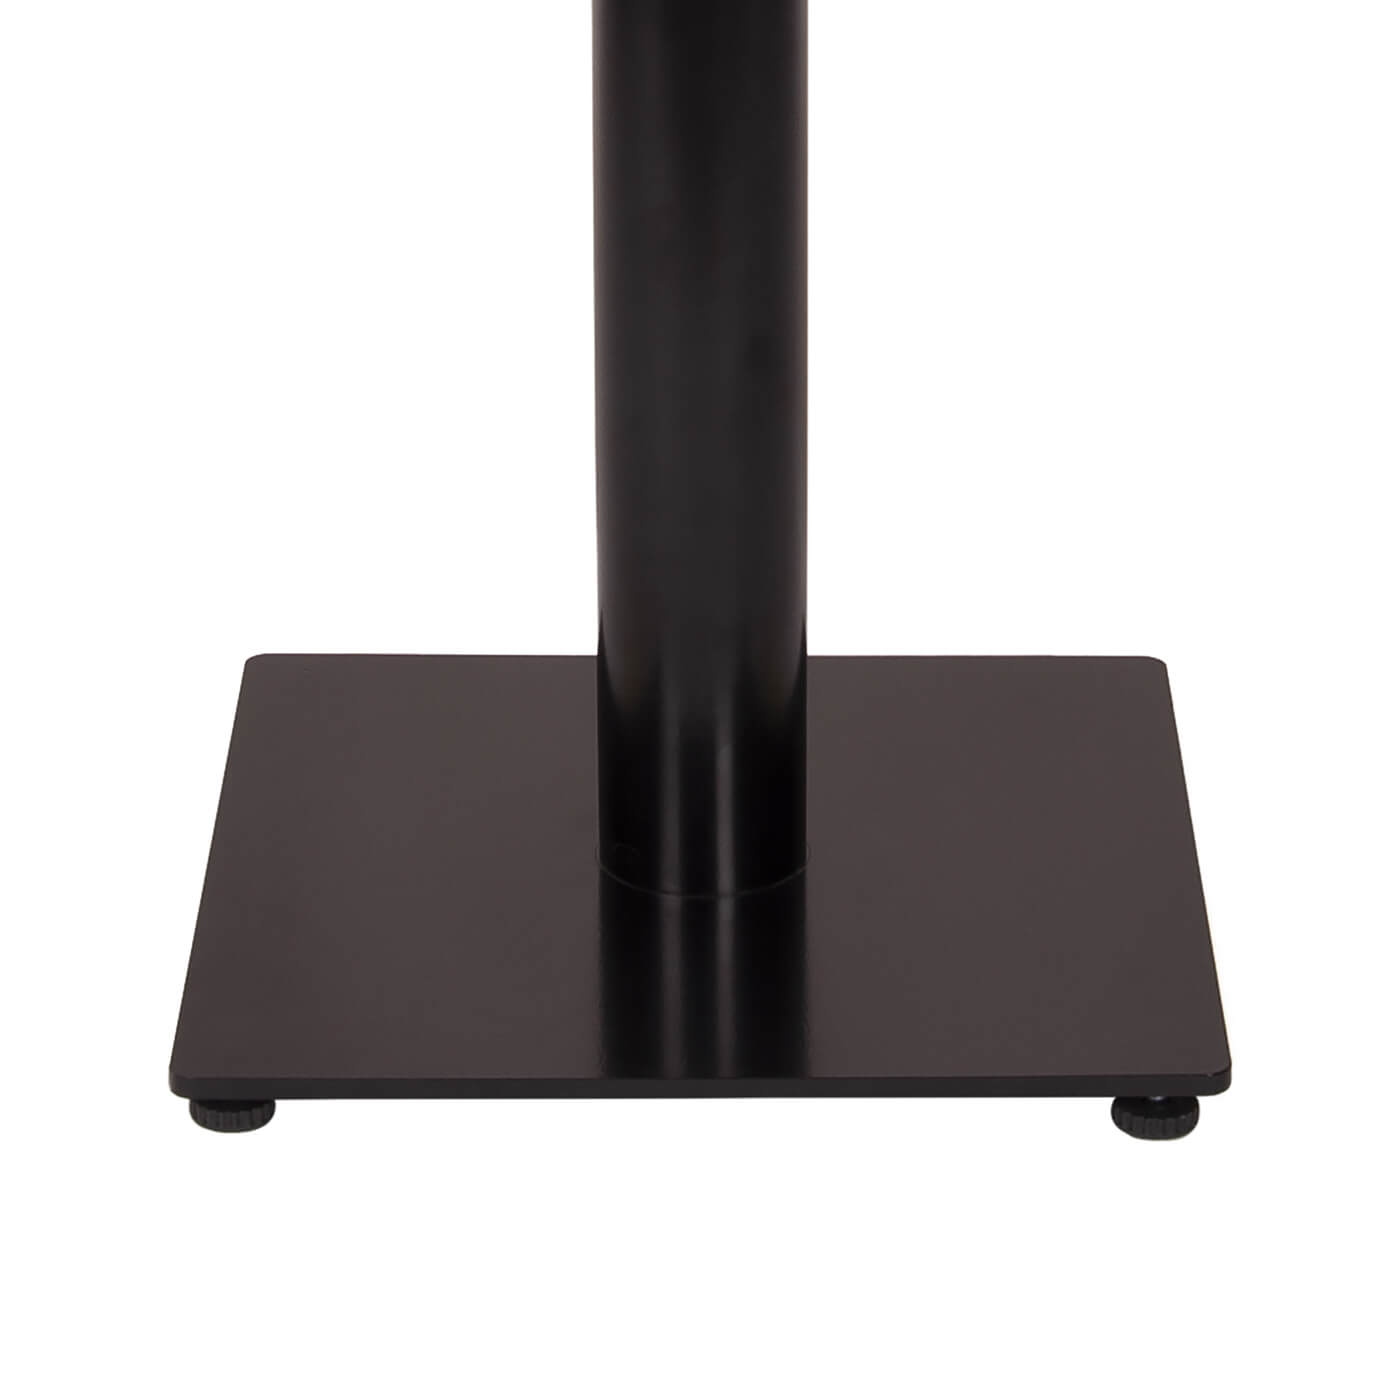 Picioare din metal pentru mese de dining, colecia 2021, design minimalist. Lungime (cm) 50 Latime (cm) 36 Inaltime (cm) 72 Culoare negru Material metal Necesita asamblare da Cod FY-S1X322-BK